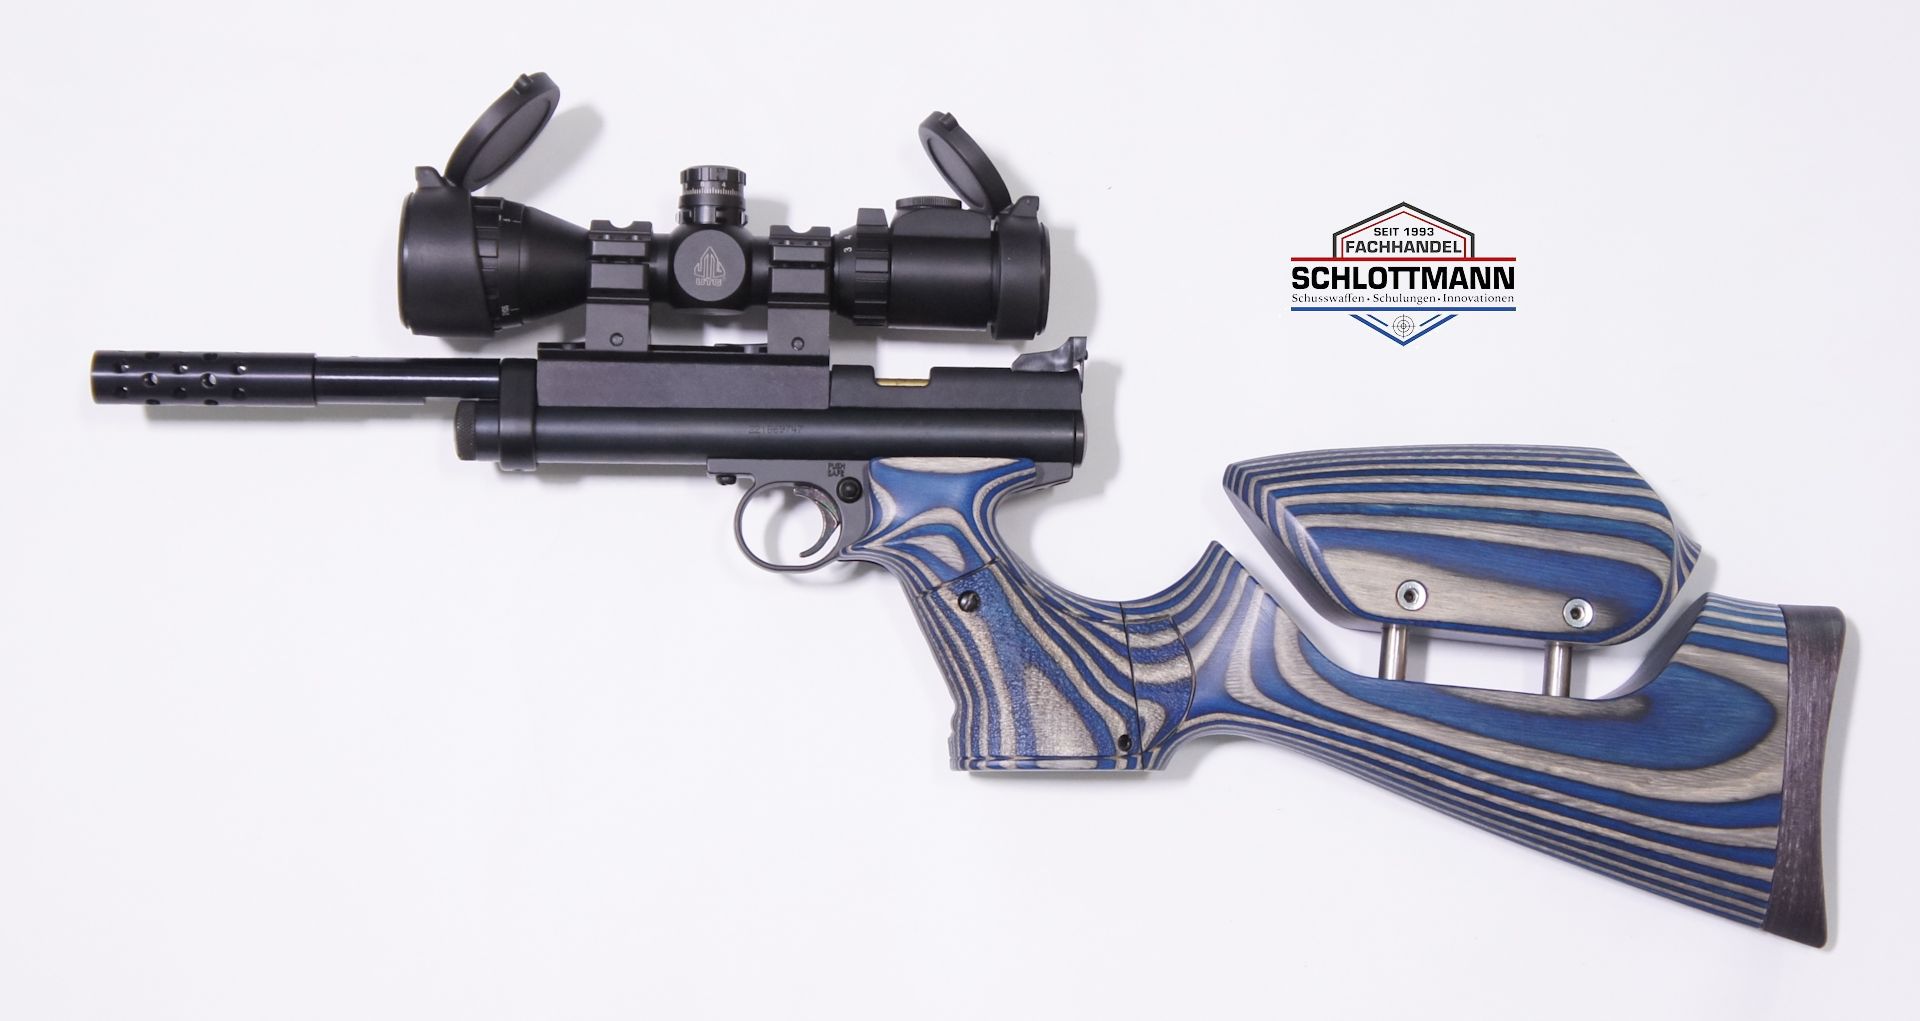 Anschlagschaft für CO2 Pistole Crosman 2240 aus  blau-grauem Schichtholz mit verstellbarer Schaftbacke